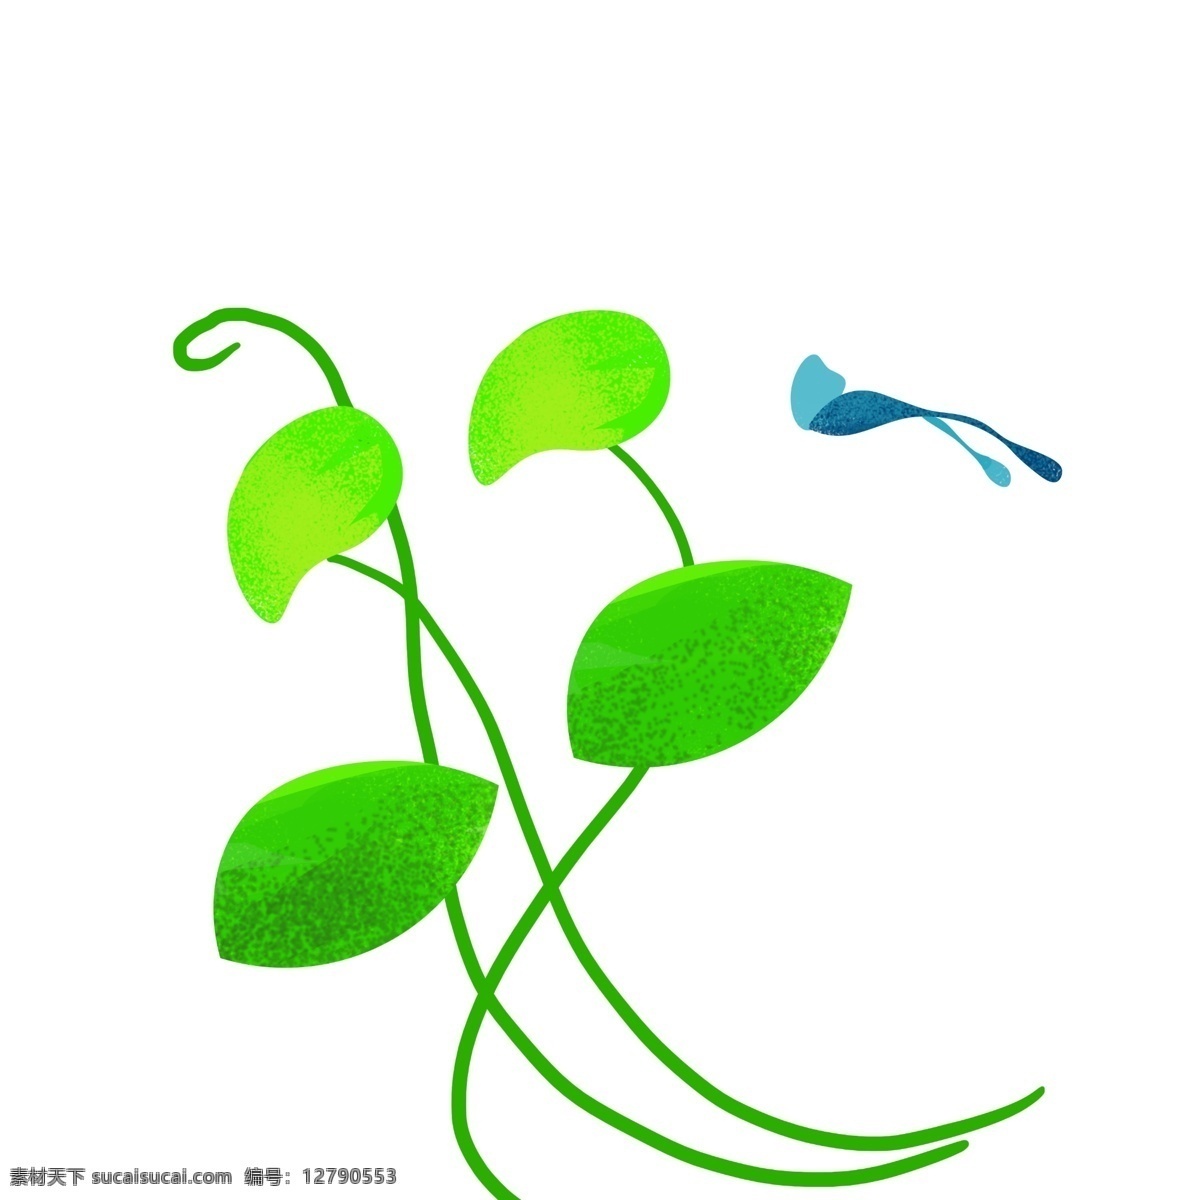 漂浮 绿色植物 插图 绿色藤条 简约的植物 绿色树叶 蓝色风筝 漂浮的树叶 创意树叶 传统的树叶 卡通插画